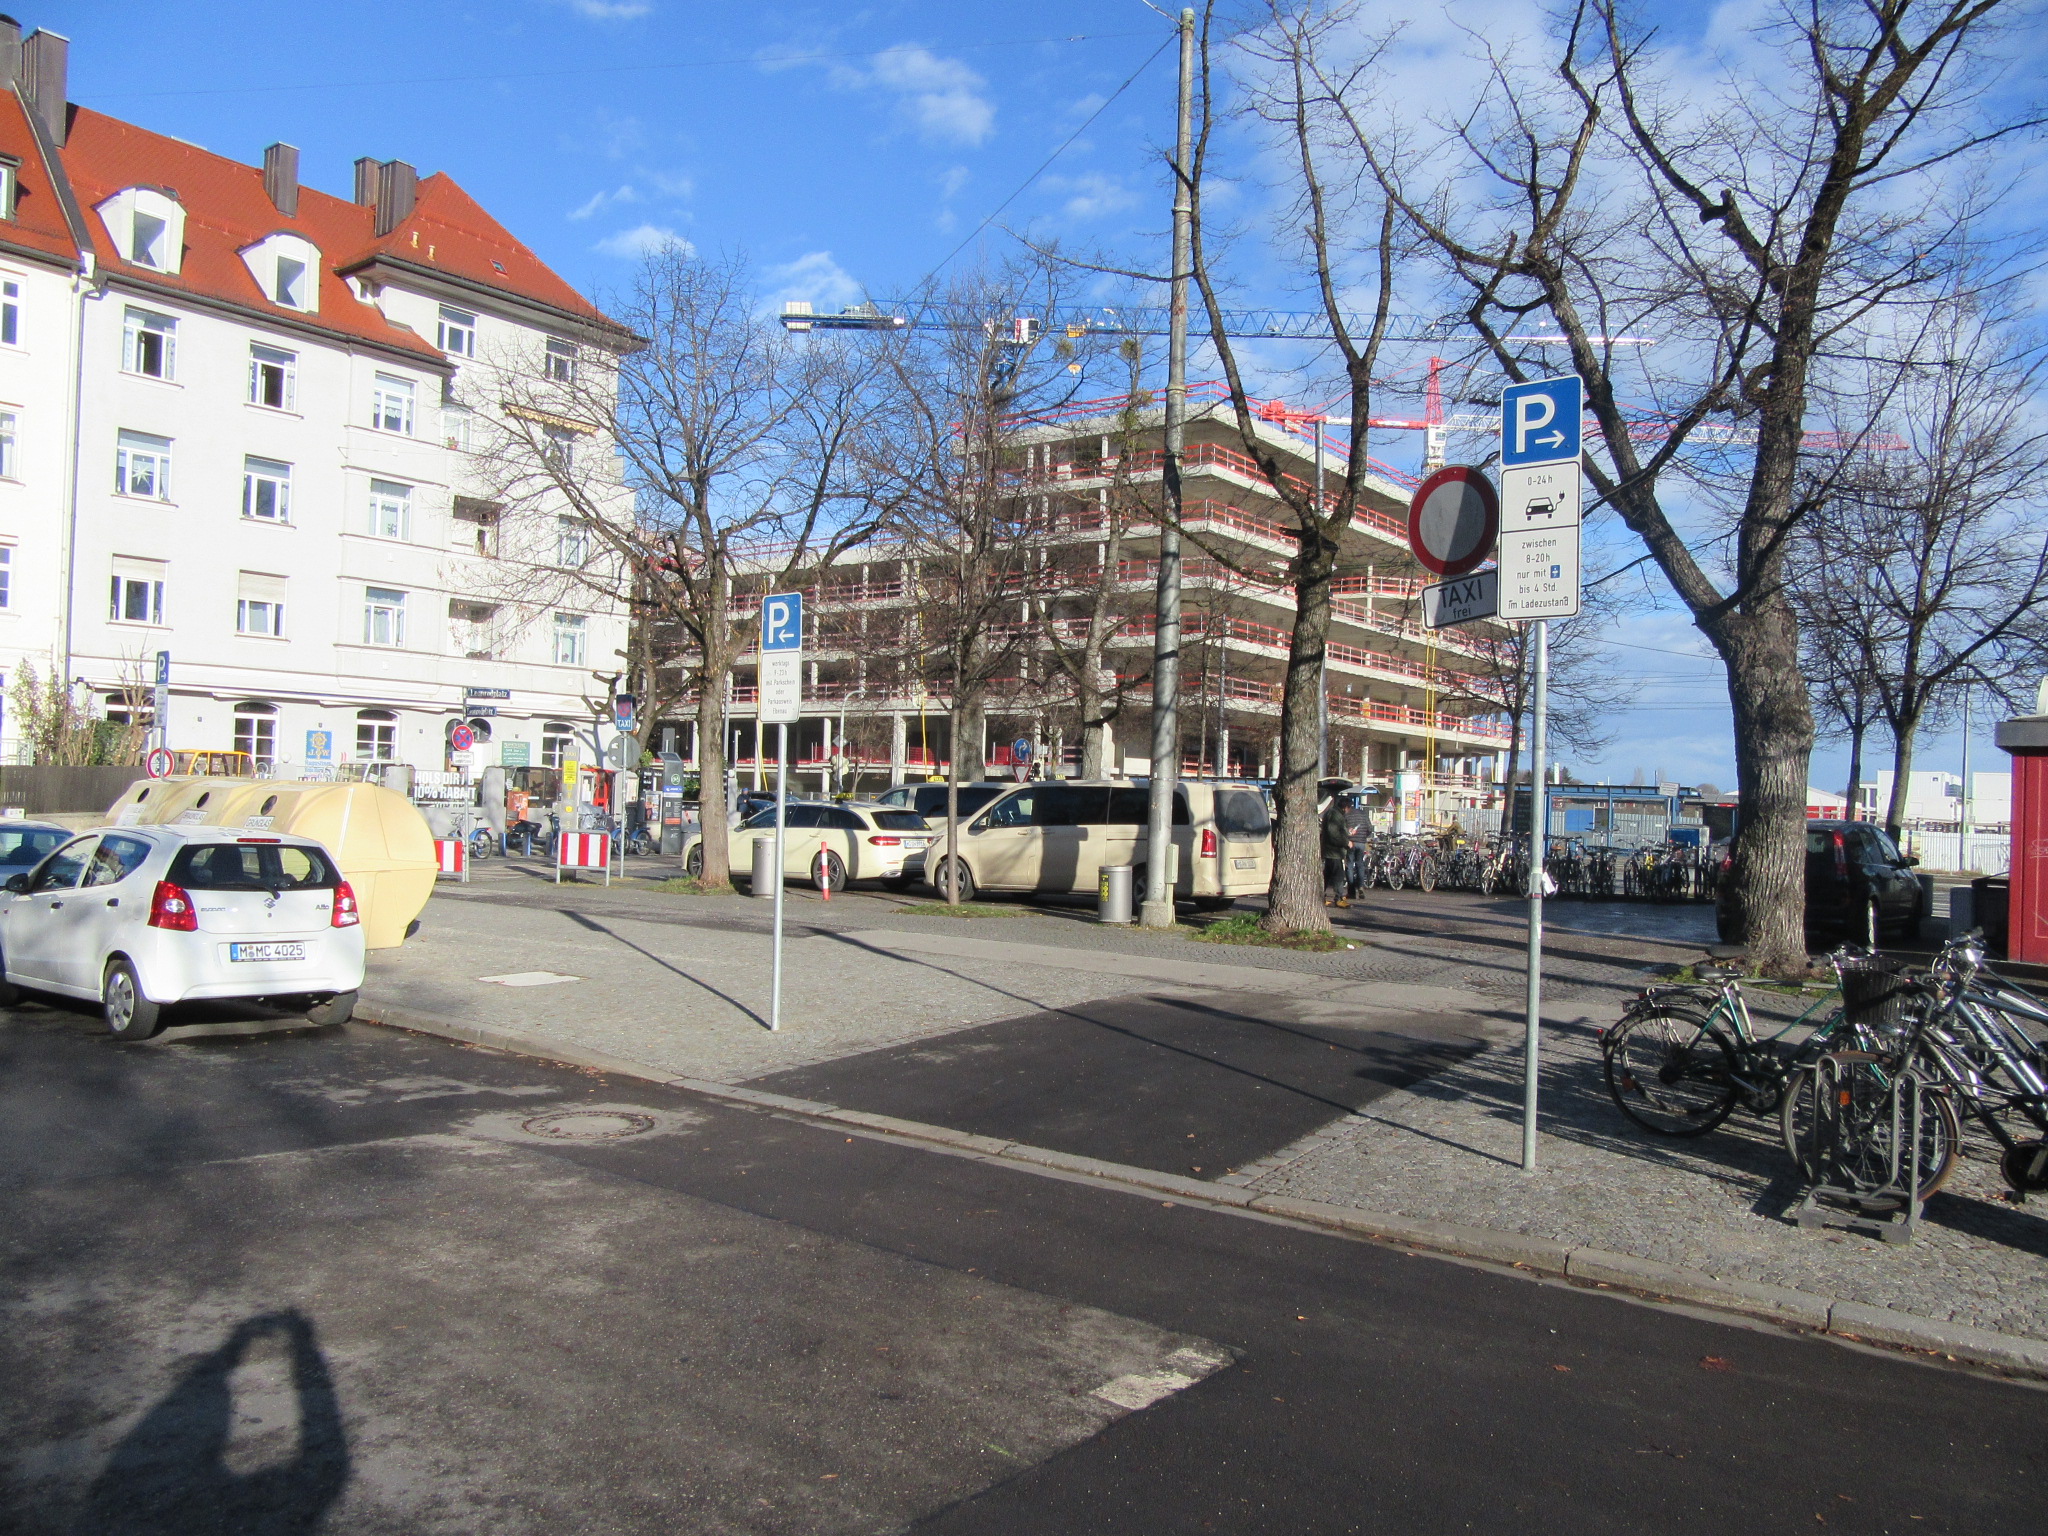 Taxi Standplatz Nockherberg